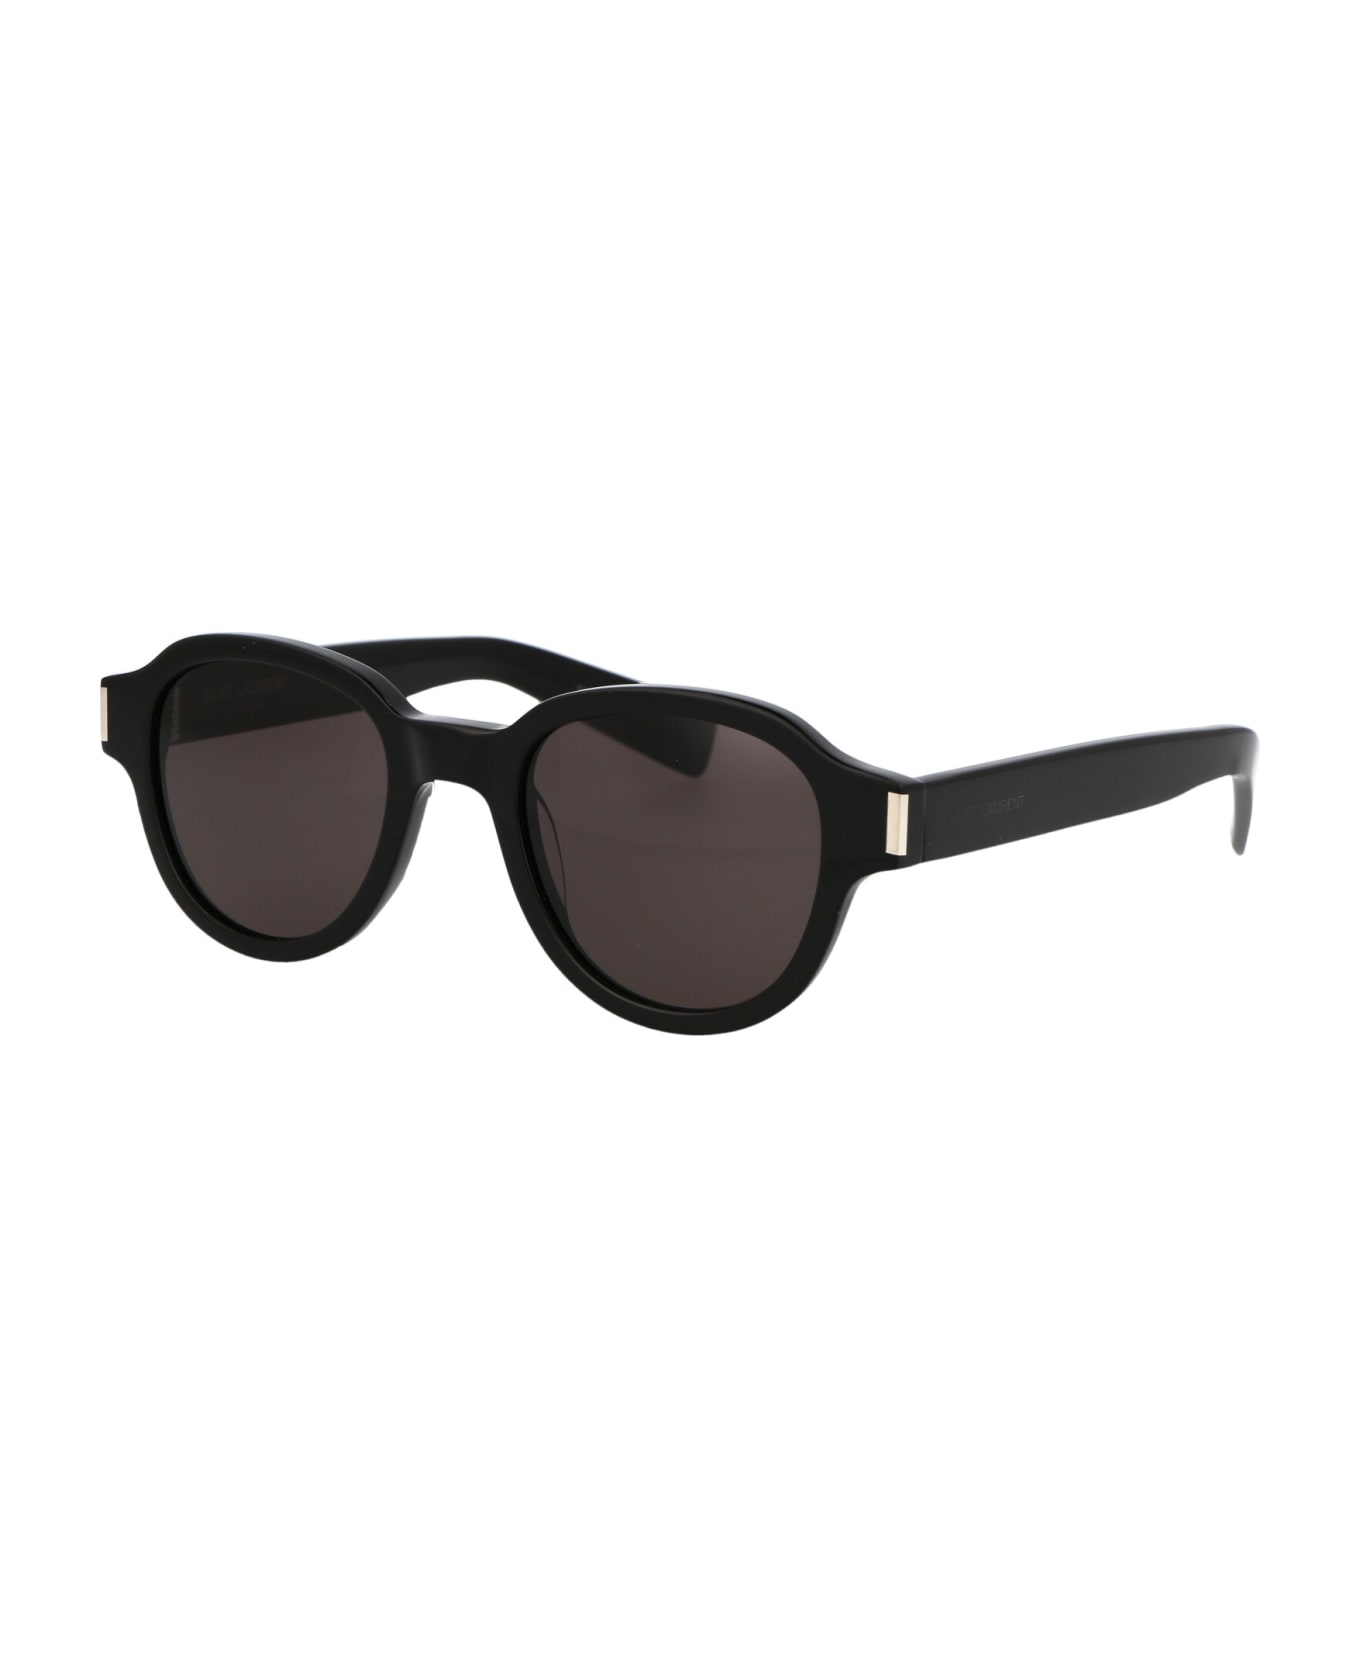 Saint Laurent Eyewear Sl 546 Sunglasses - 001 BLACK BLACK BLACK